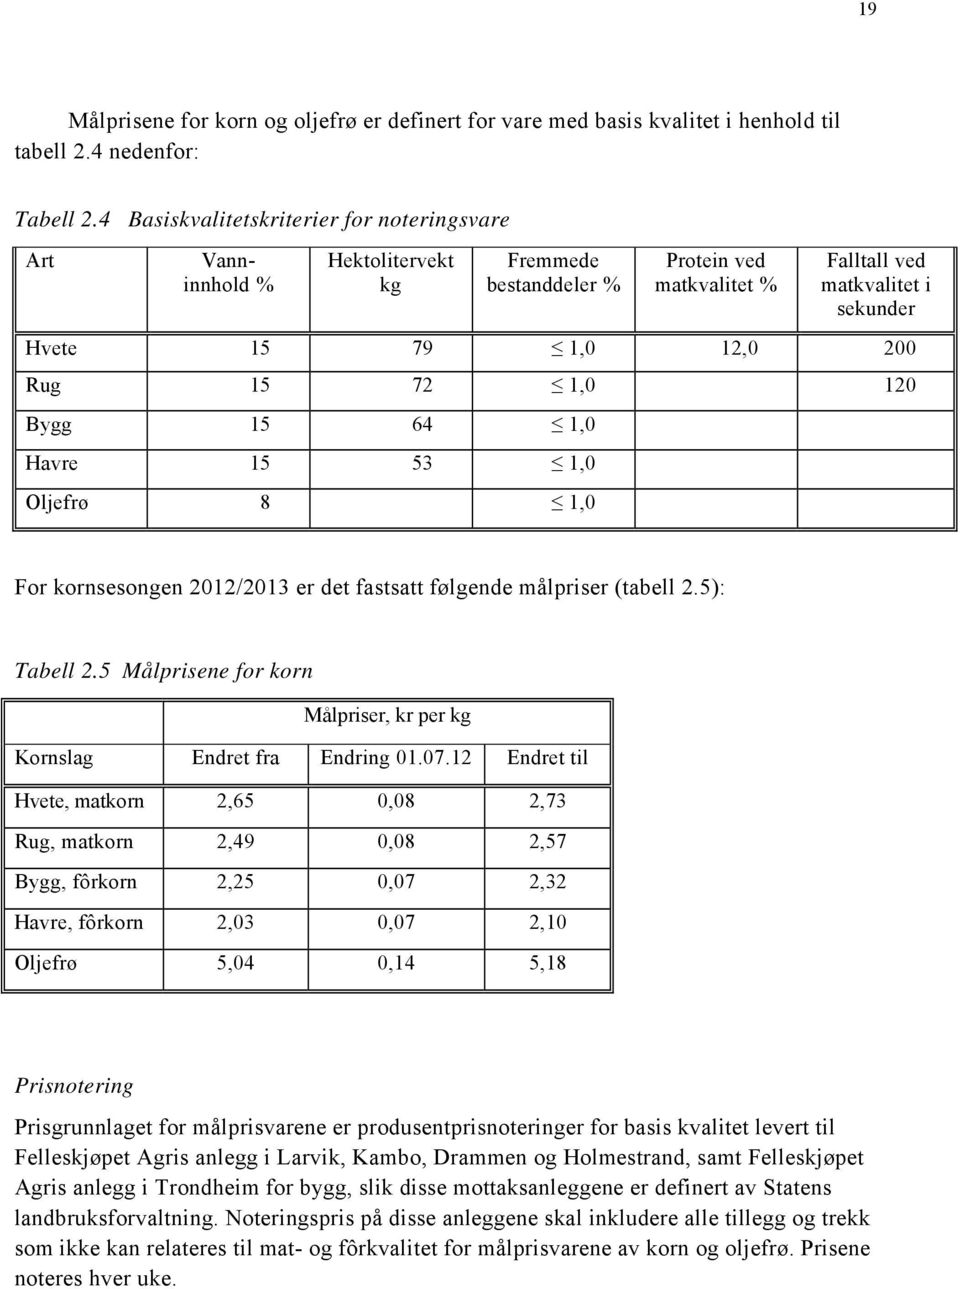 72 1,0 120 Bygg 15 64 1,0 Havre 15 53 1,0 Oljefrø 8 1,0 For kornsesongen 2012/2013 er det fastsatt følgende målpriser (tabell 2.5): Tabell 2.